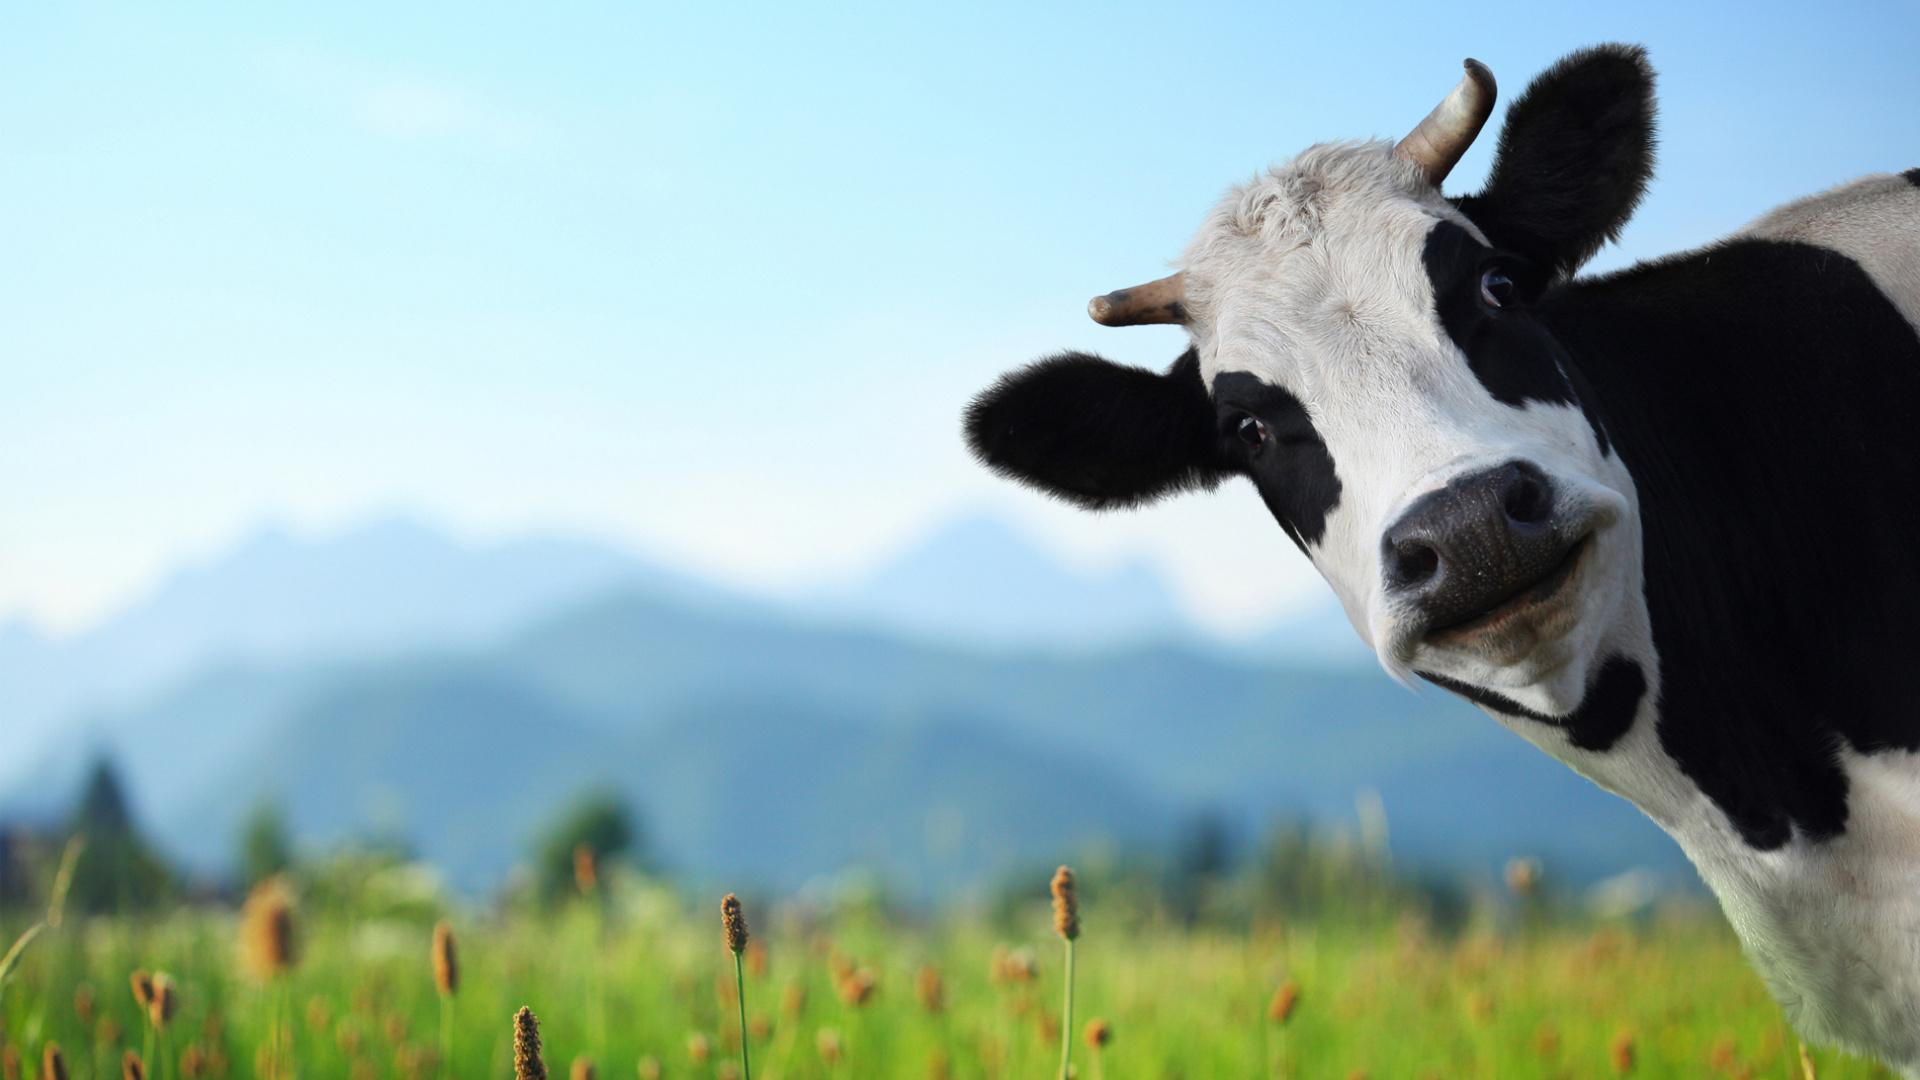 Mách bạn 93 iphone hình nền cute bò sữa mới nhất  Tin học Đông Hòa